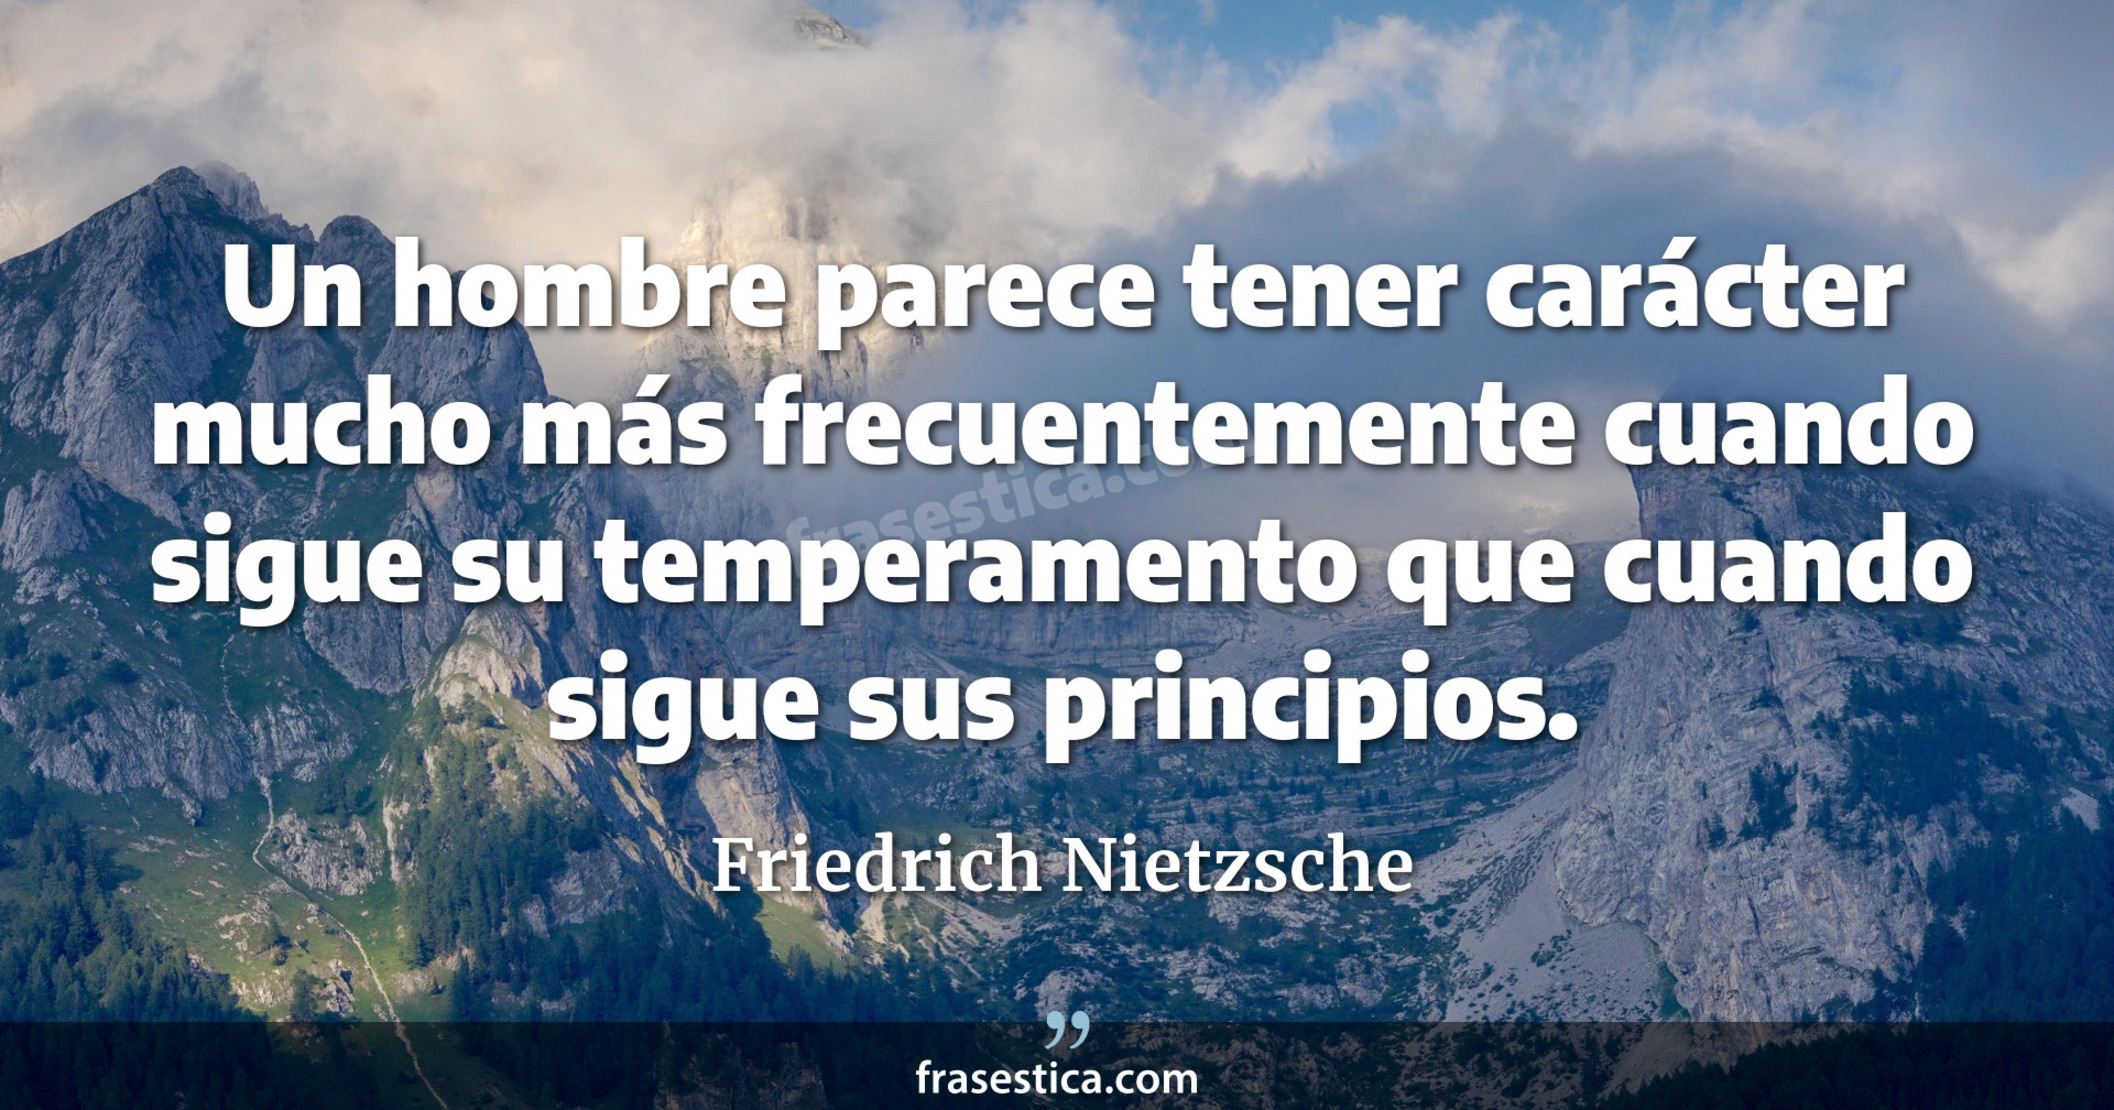 Un hombre parece tener carácter mucho más frecuentemente cuando sigue su temperamento que cuando sigue sus principios. - Friedrich Nietzsche